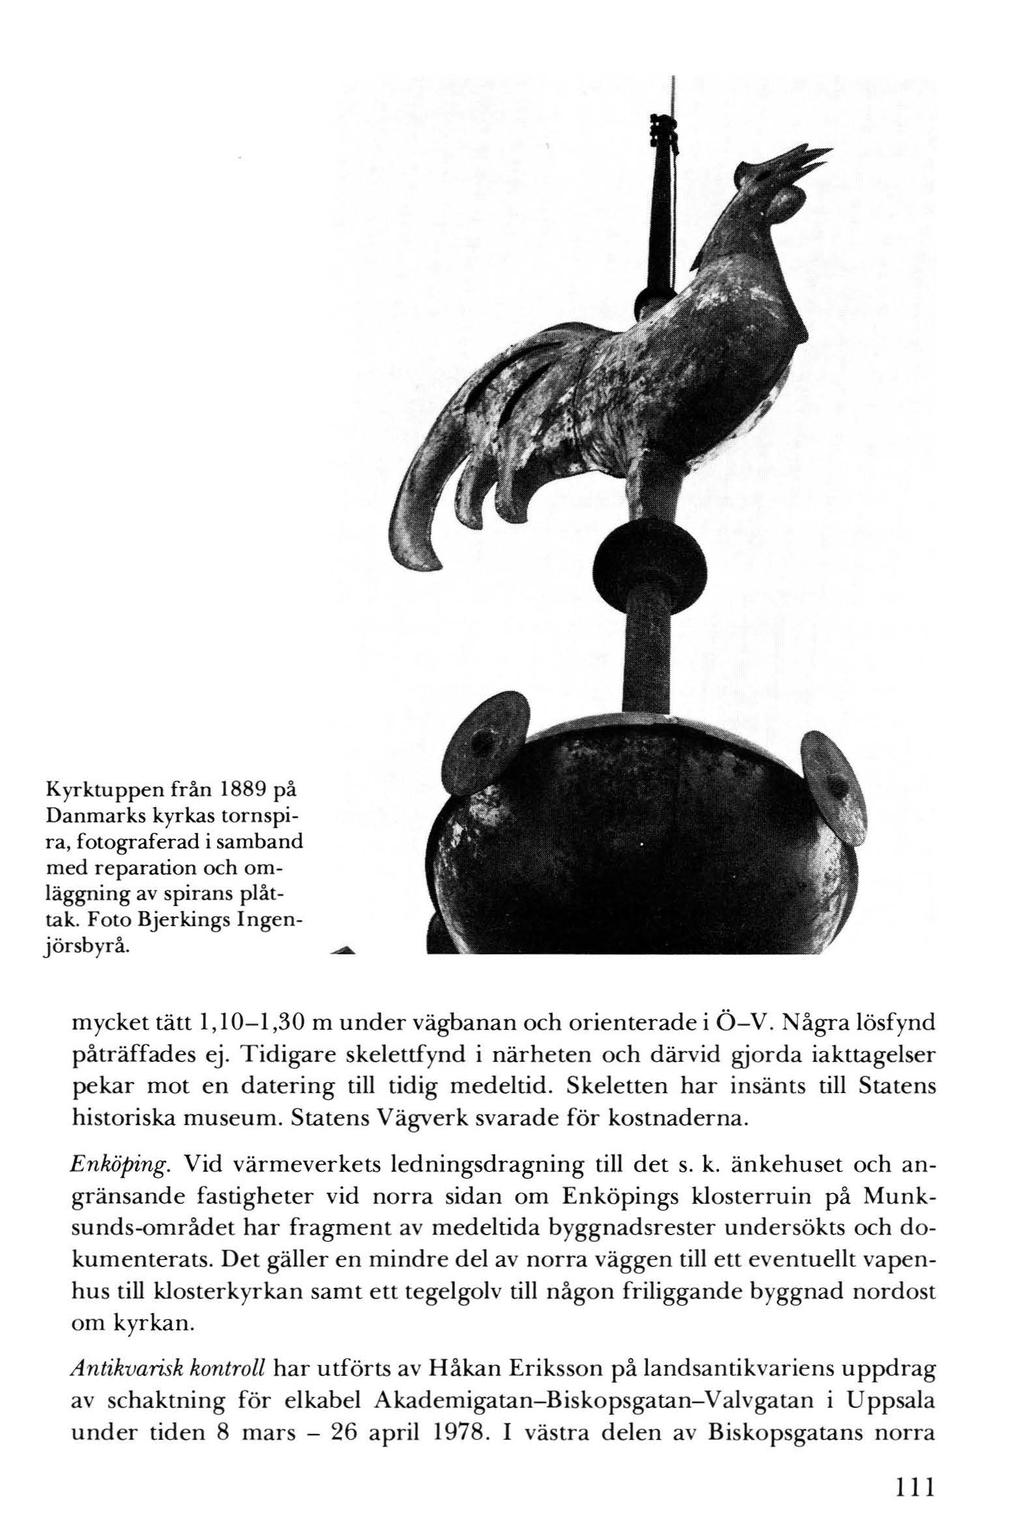 Kyrktuppen från 1889 på Danmarks kyrkas tornspira, fotograferad i samband med reparation och omläggning av spirans plåttak. Foto Bjerkings Ingenjörsbyrå.